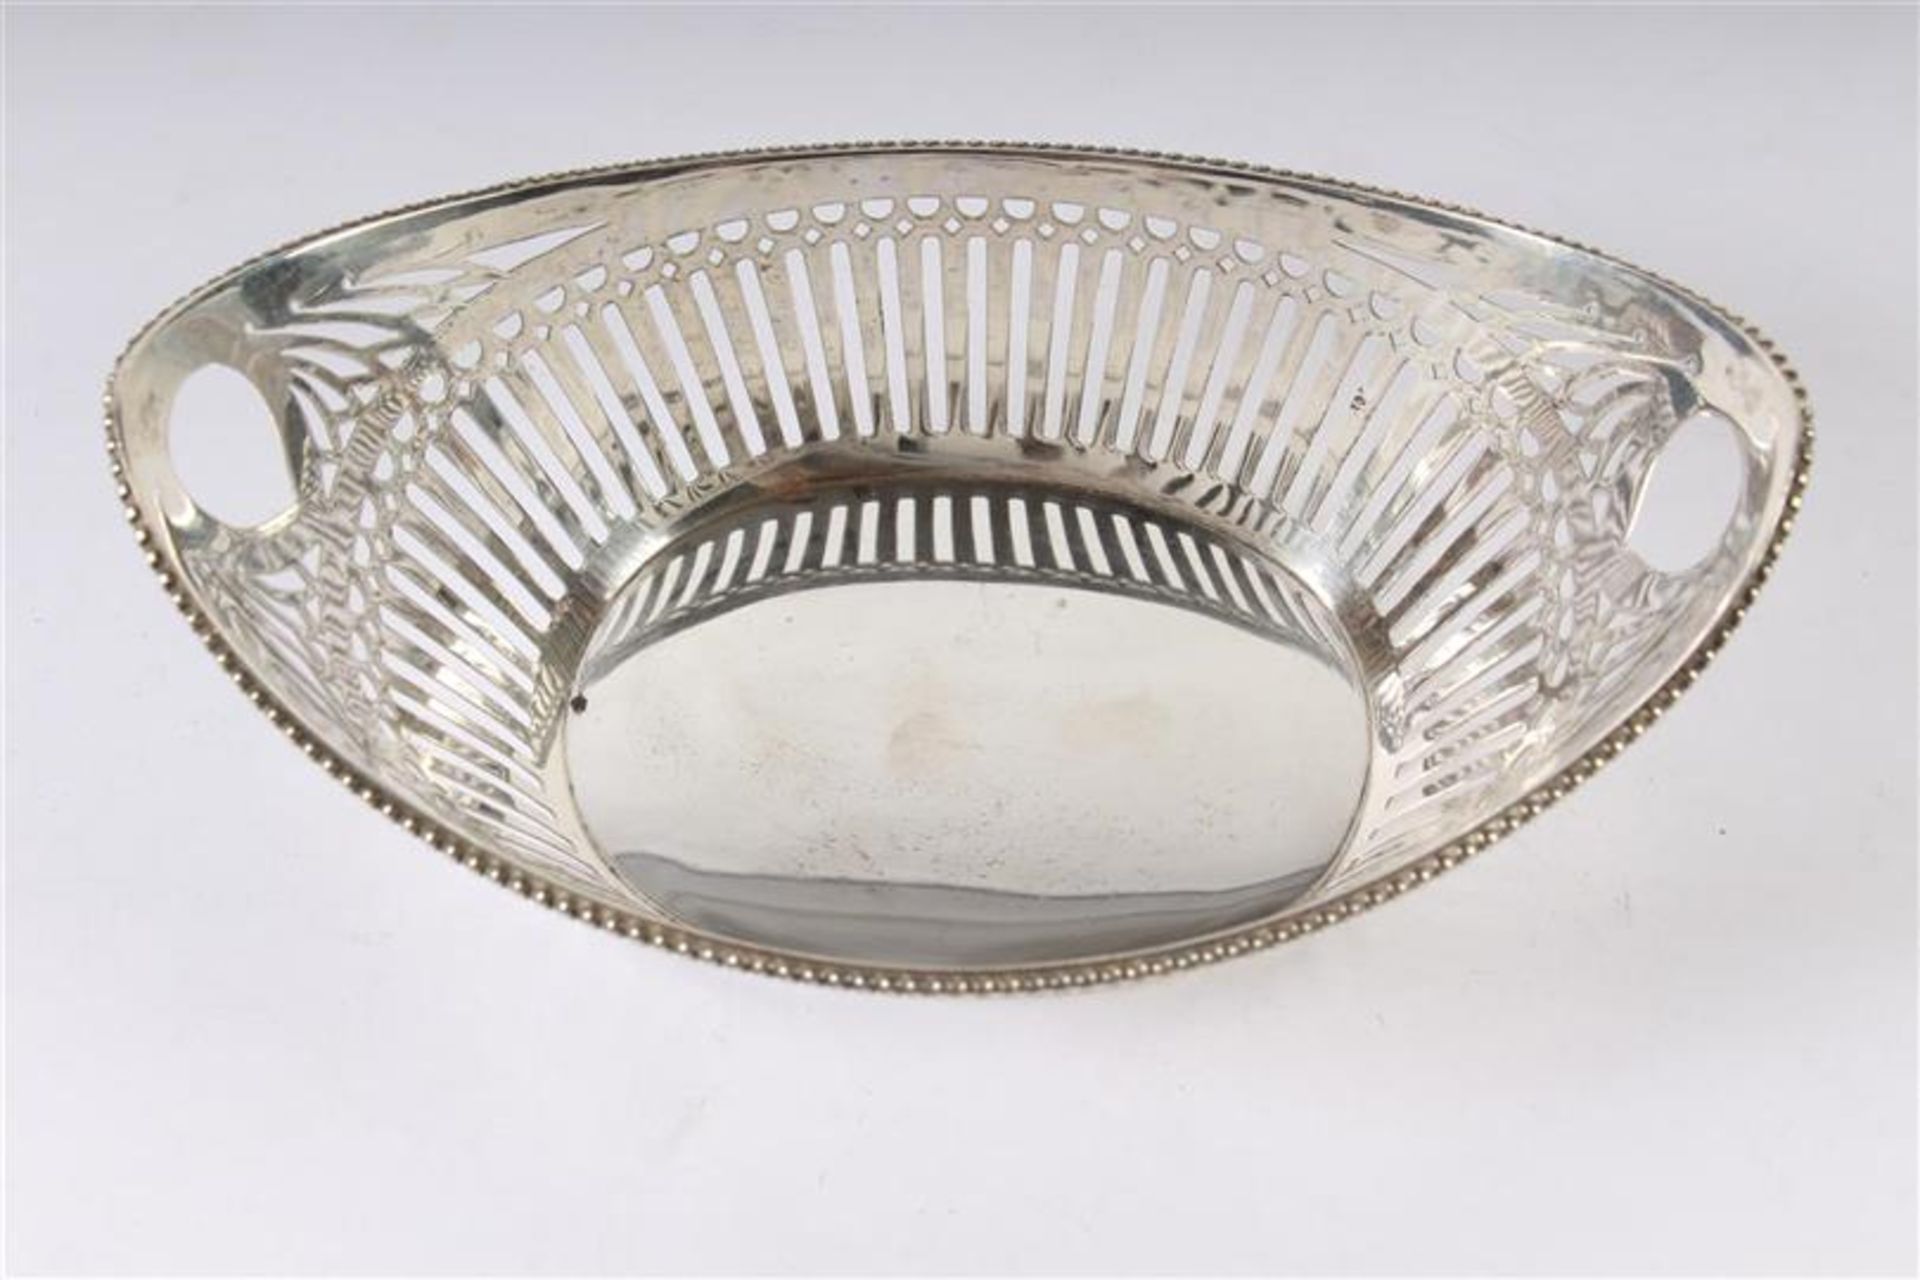 Zilveren bonbonmandje ajour met parelrand, Hollands gekeurd. B: 15 cm. - Bild 2 aus 4